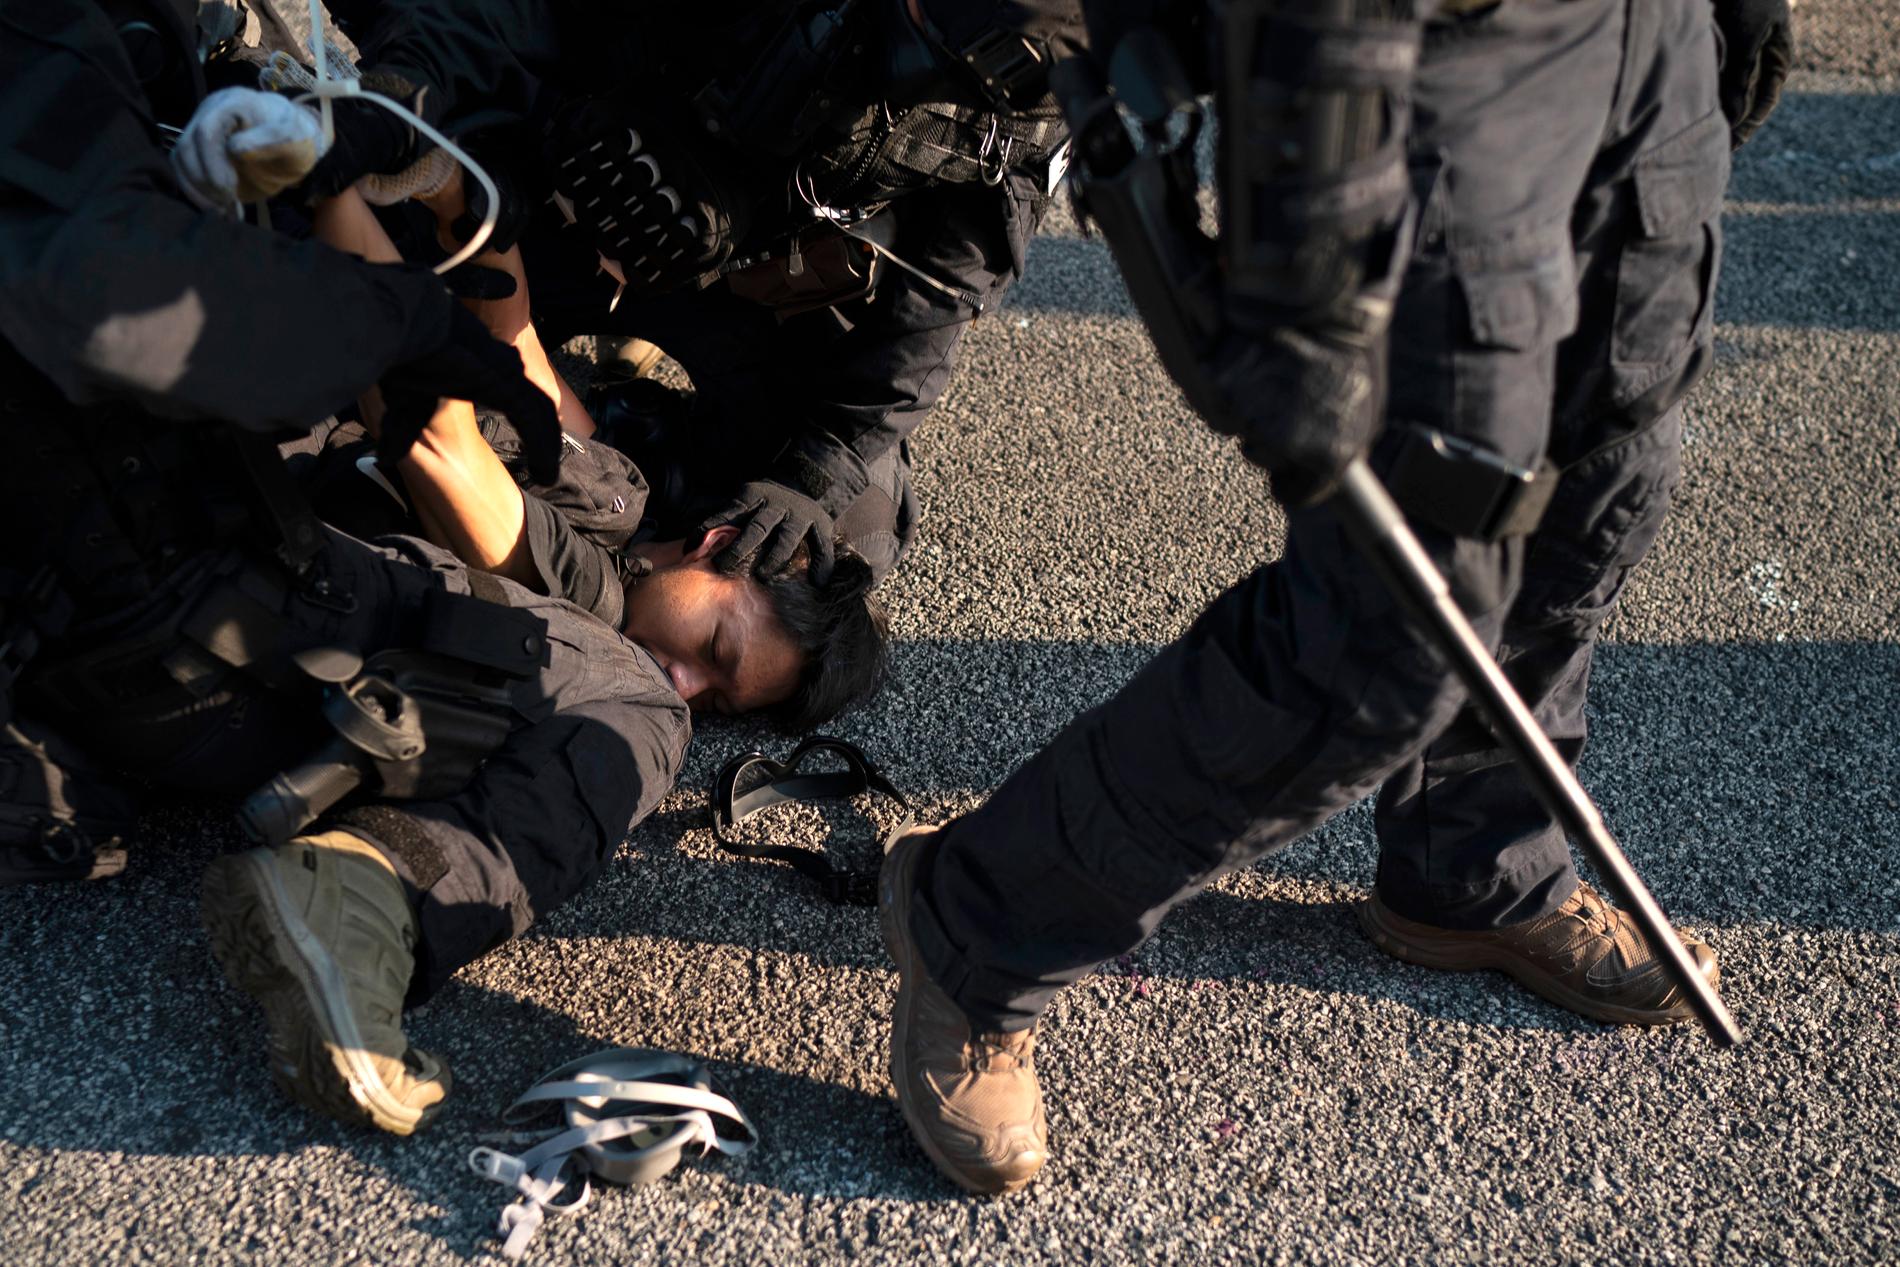 PÅGREPET: En demonstrant blir holdt nede og pågrepet under gatekampene i Hongkong.